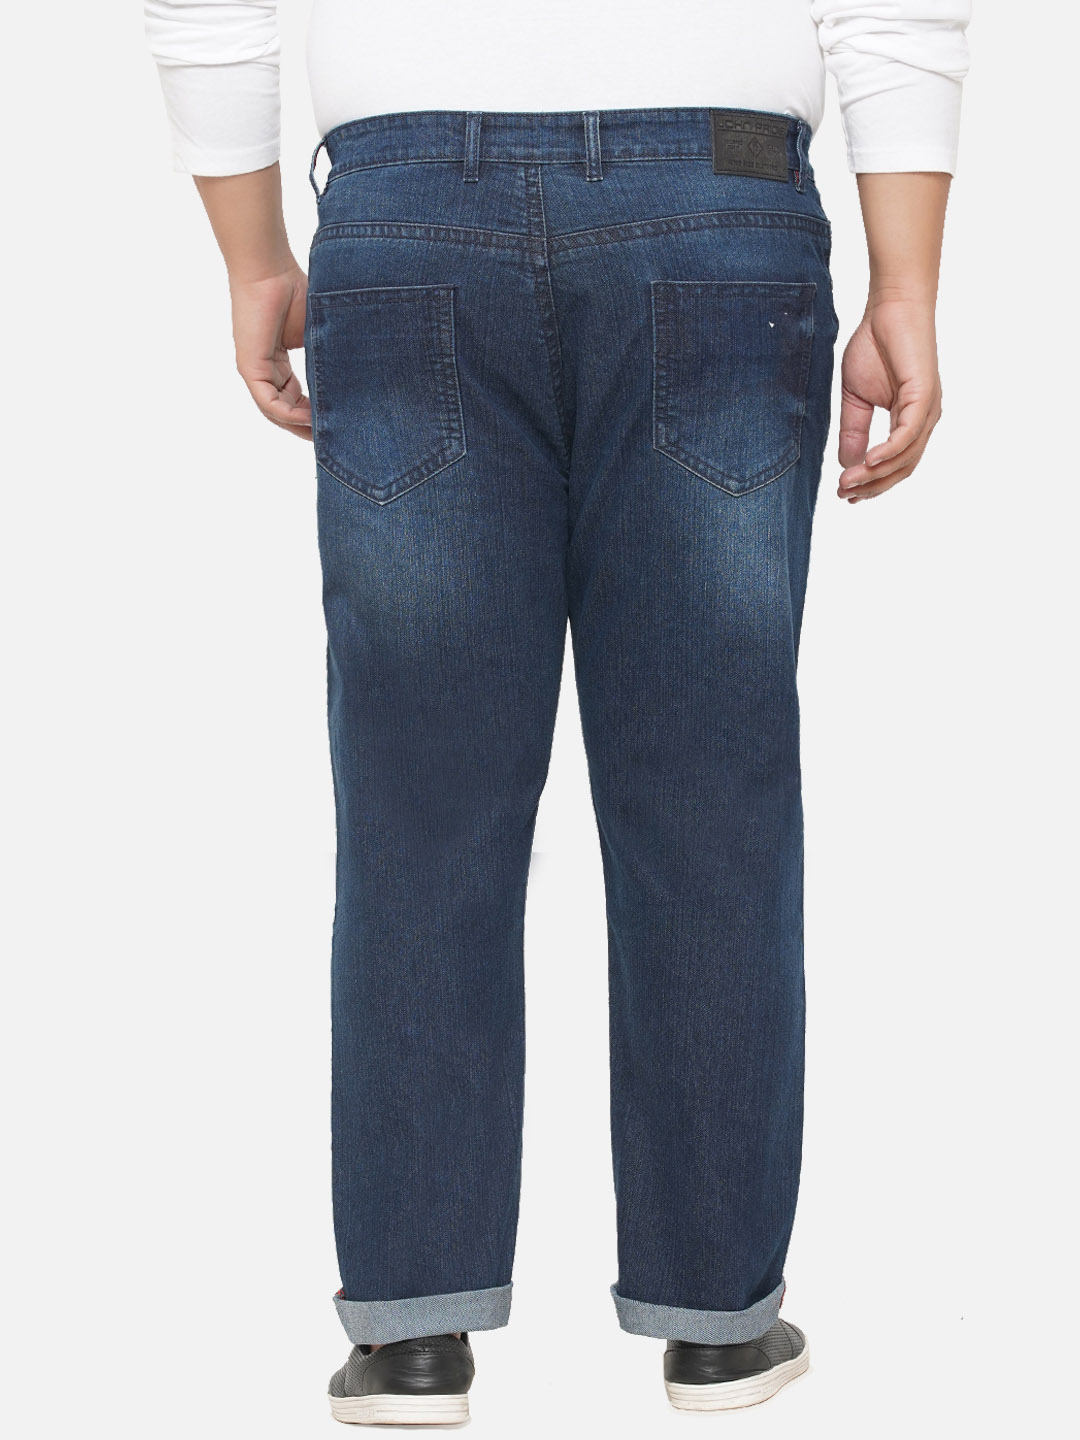 bottomwear/jeans/EJPJ25072/ejpj25072-5.jpg